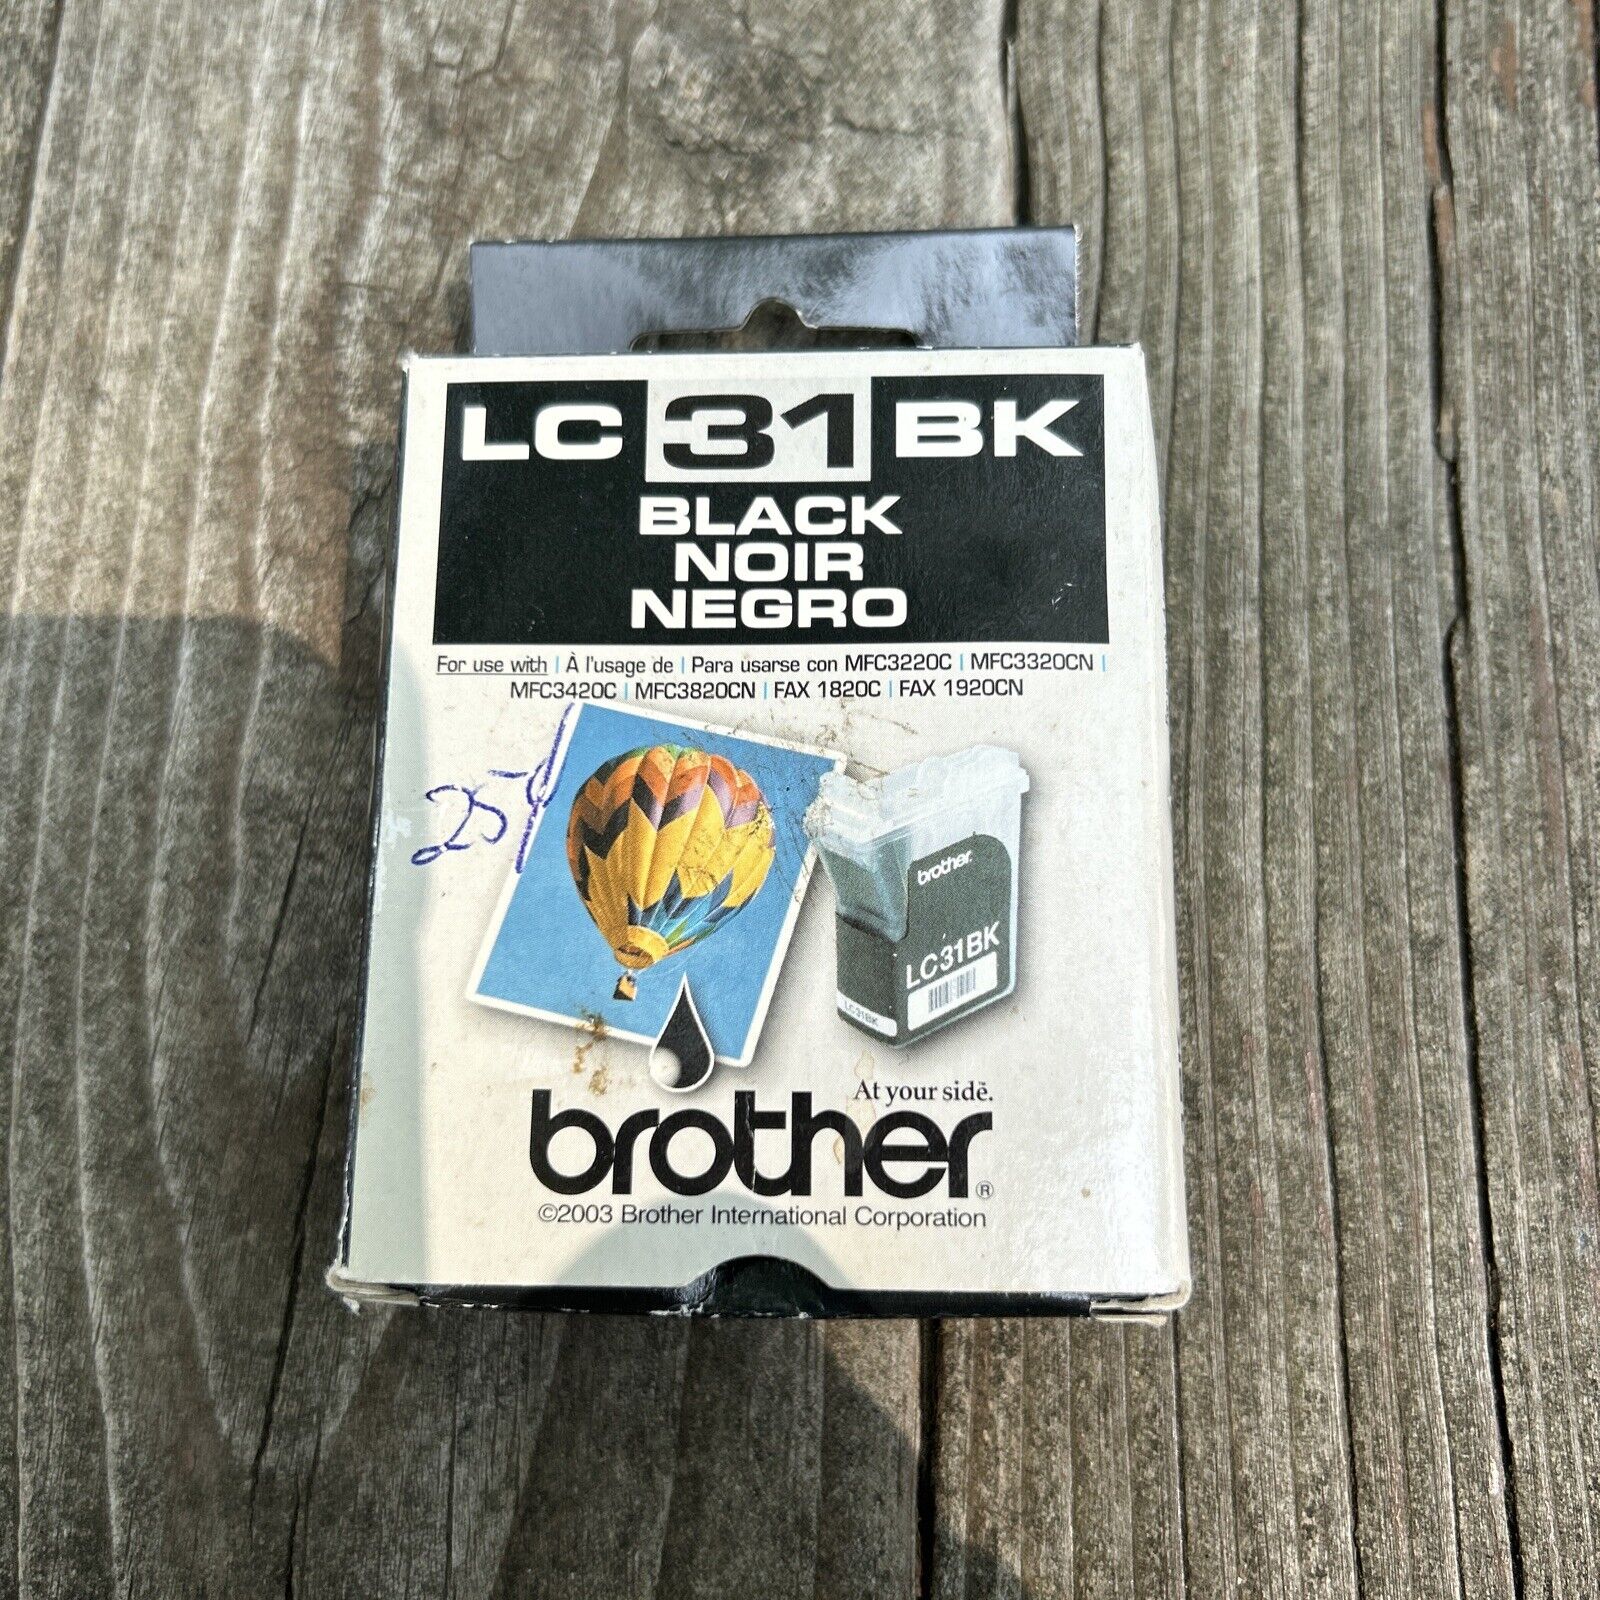 Genuine Brother LC31BK Ink Cartridge Factory Sealed Original OEM